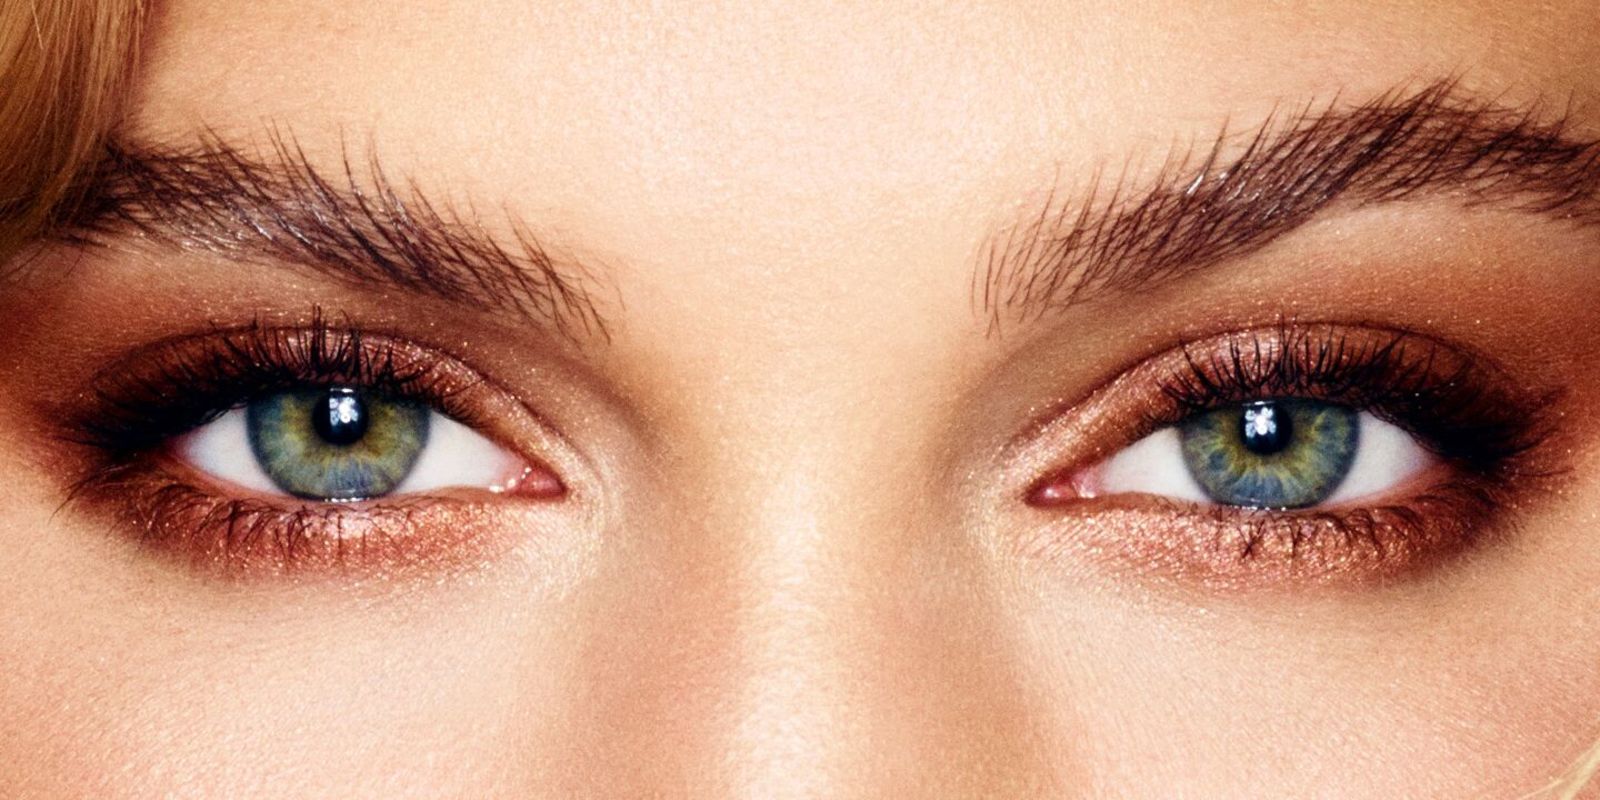 Nahaufnahme von dunklen Augenbrauen und grün blauen Augen, die mit bronze Lidschatten geschminkt sind. 